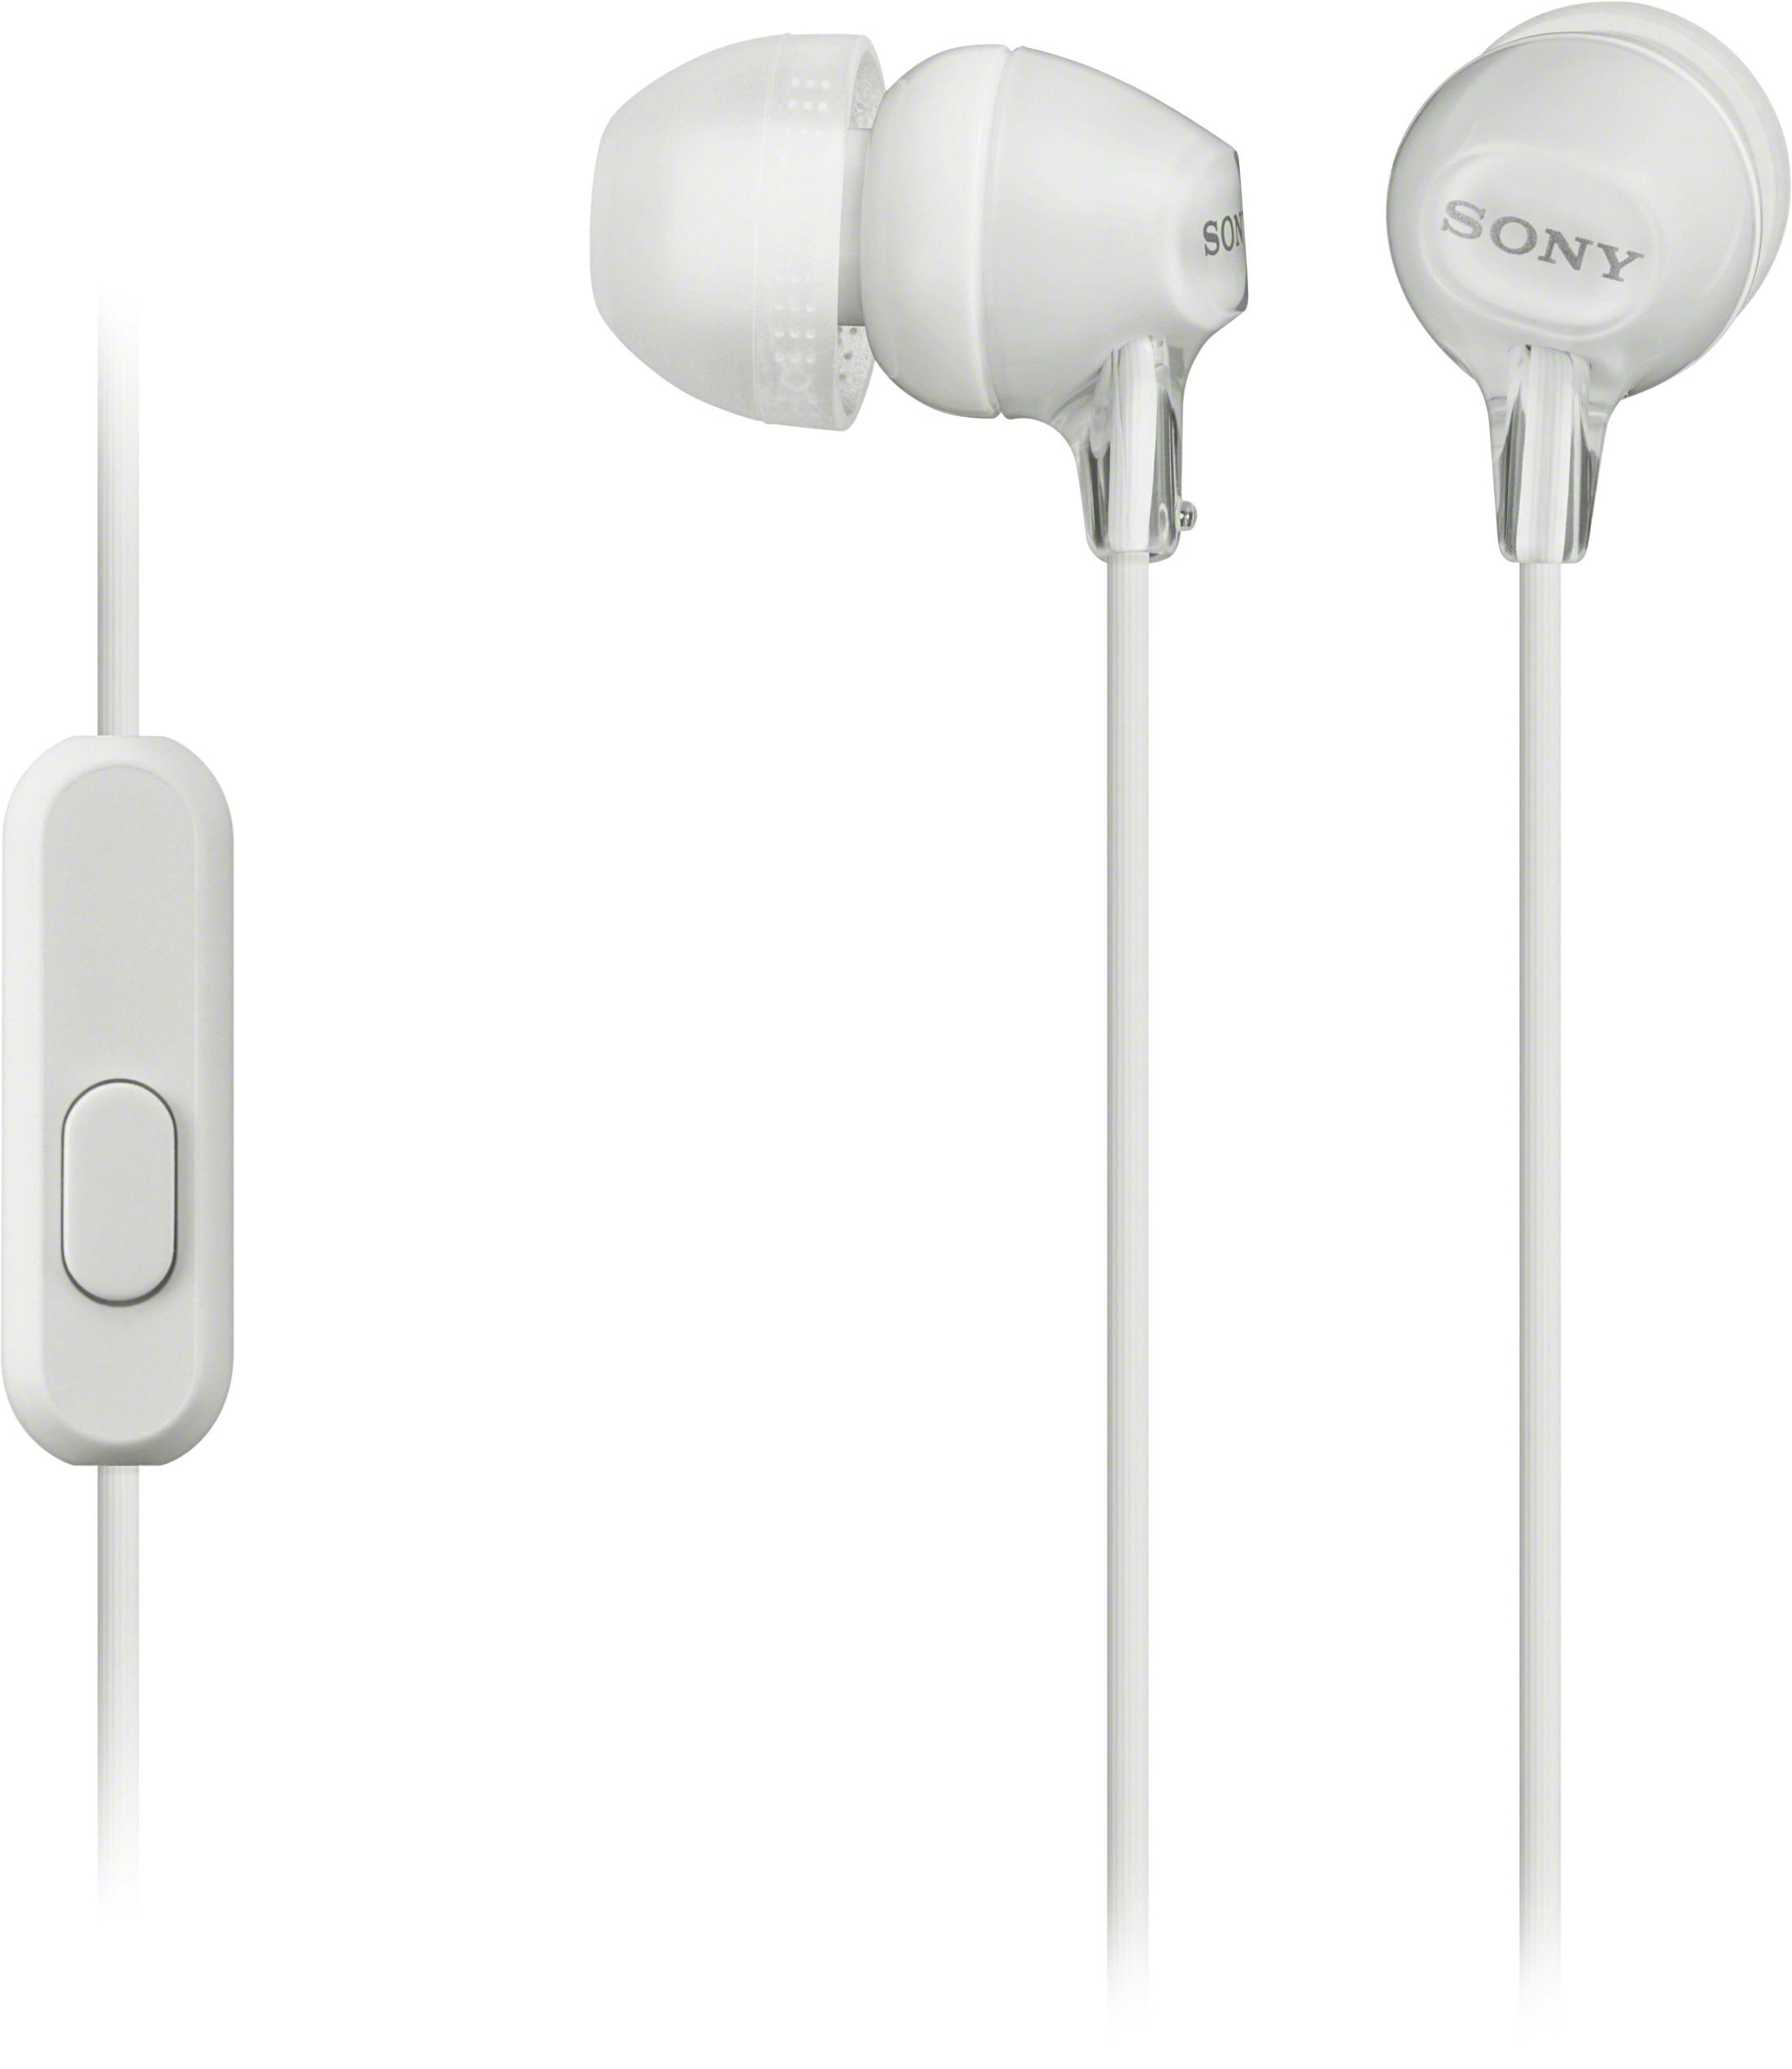 Sony Headphones & Earbuds